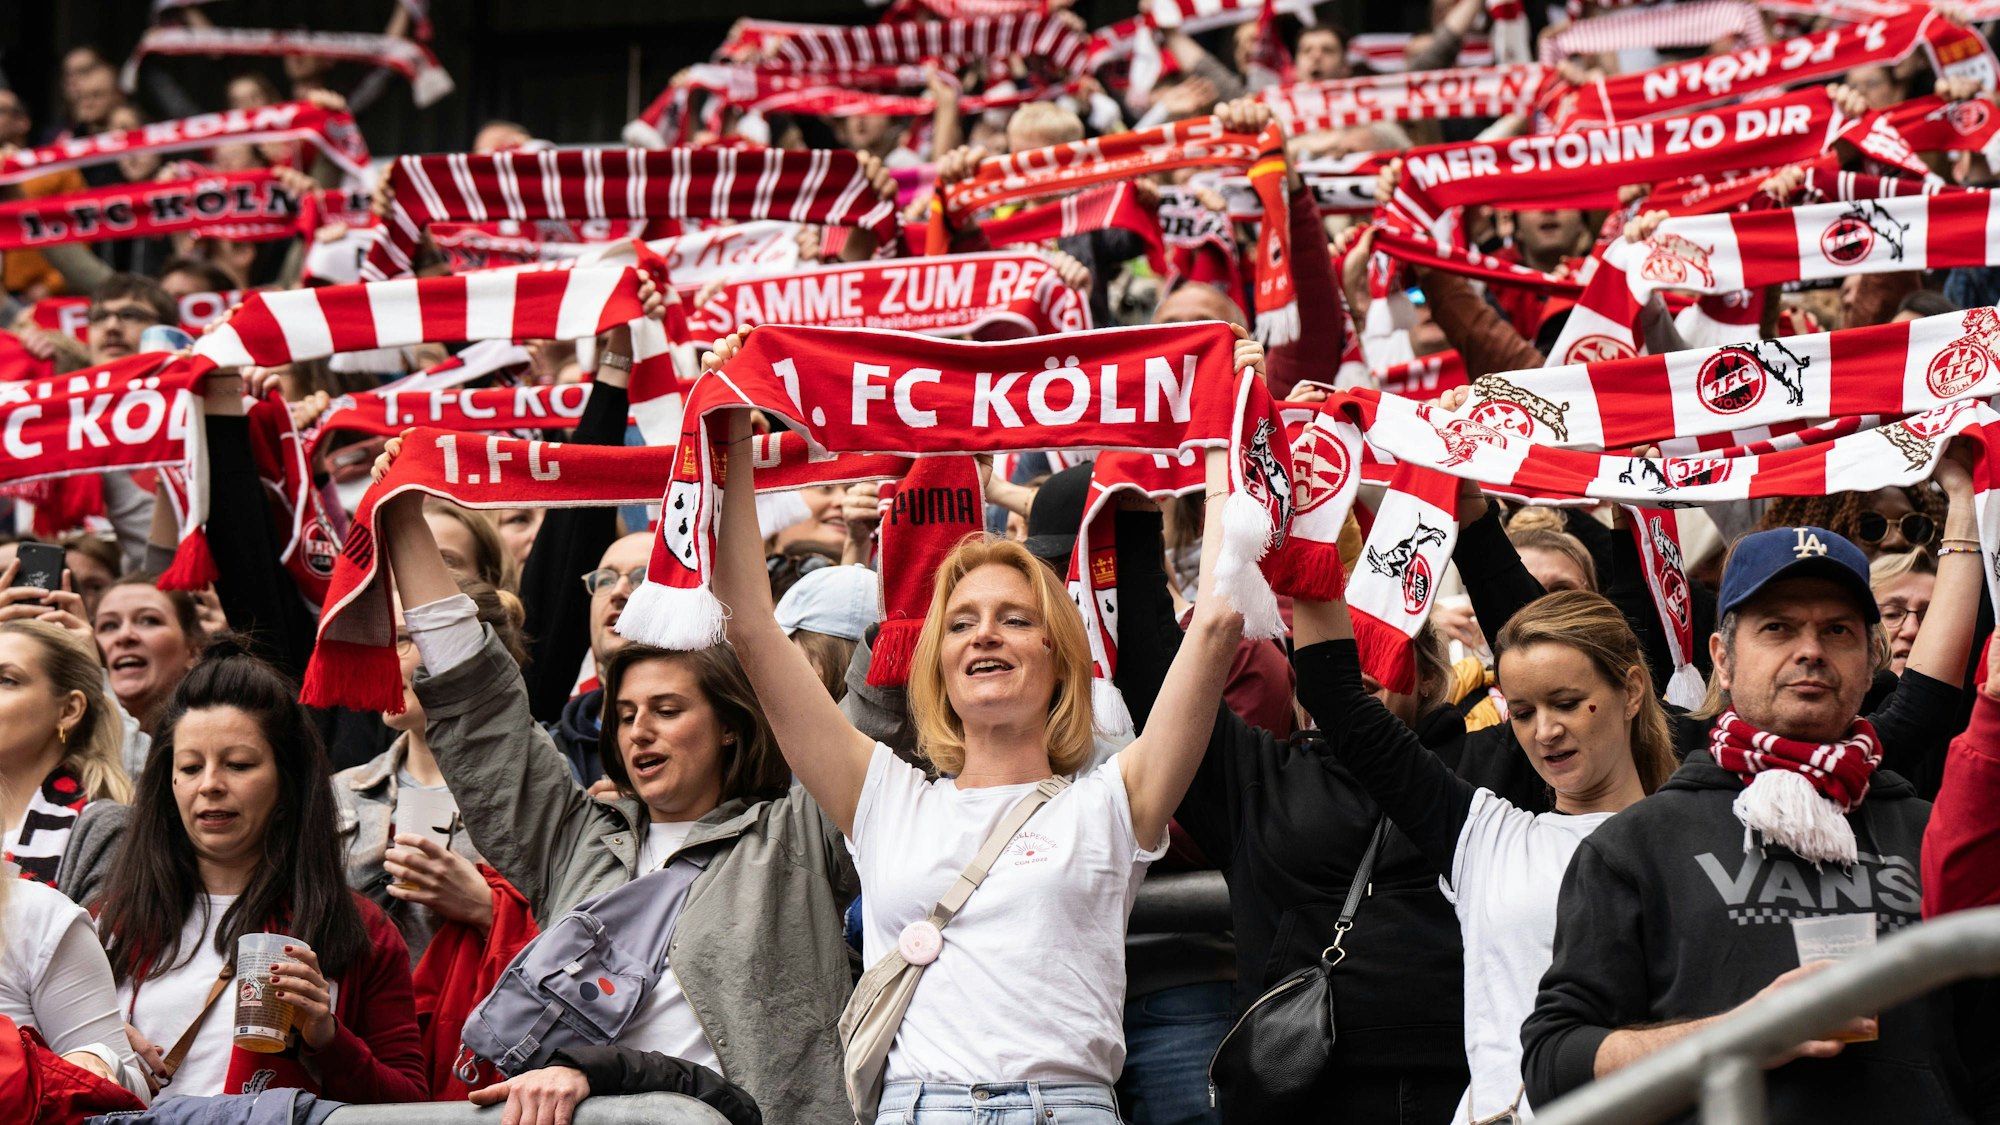 Eine tolle Stimmung herrschte im Kölner Rheinenergie-Stadion bereits vor dem Anpfiff des Rekordspiels.